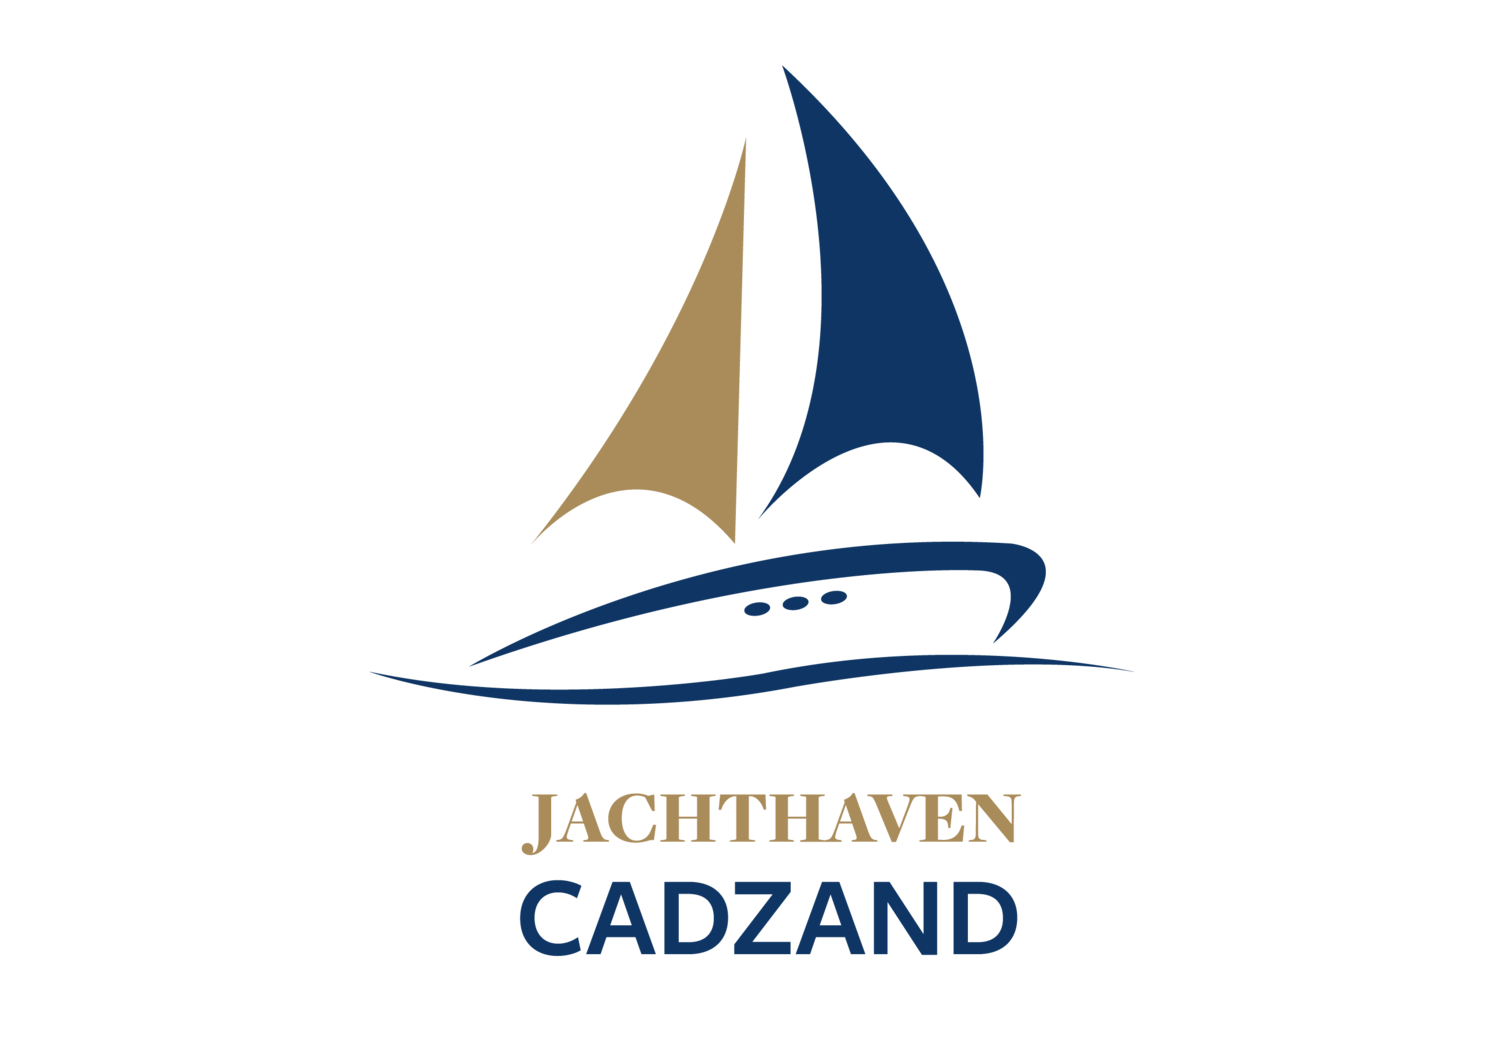 Jachthaven Cadzand